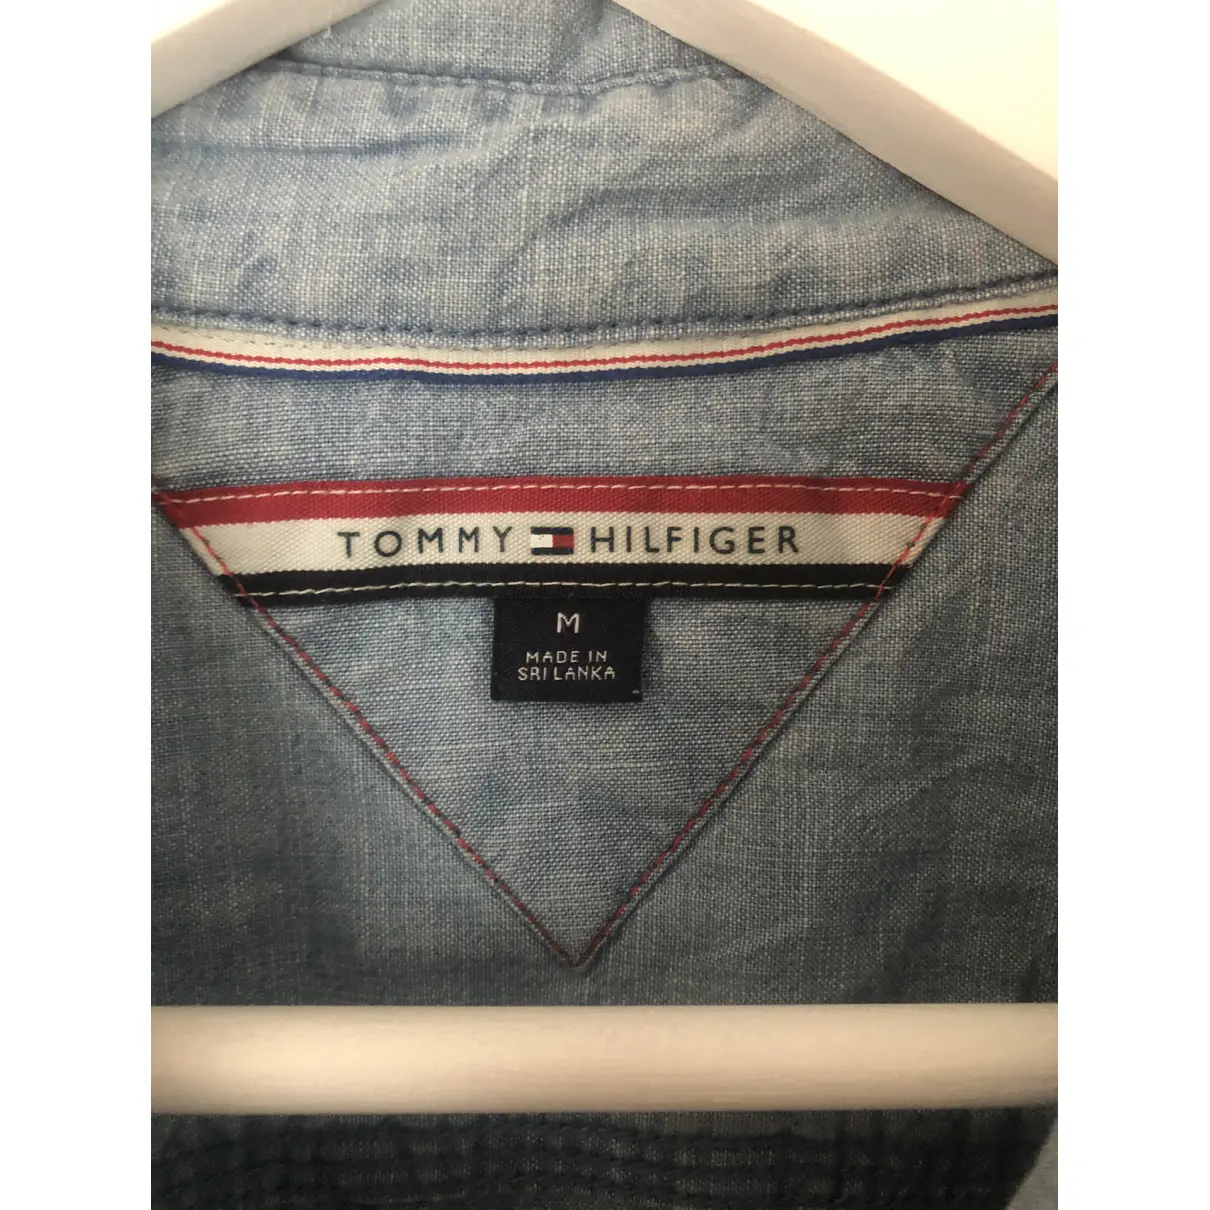 Buy Tommy Hilfiger Shirt online